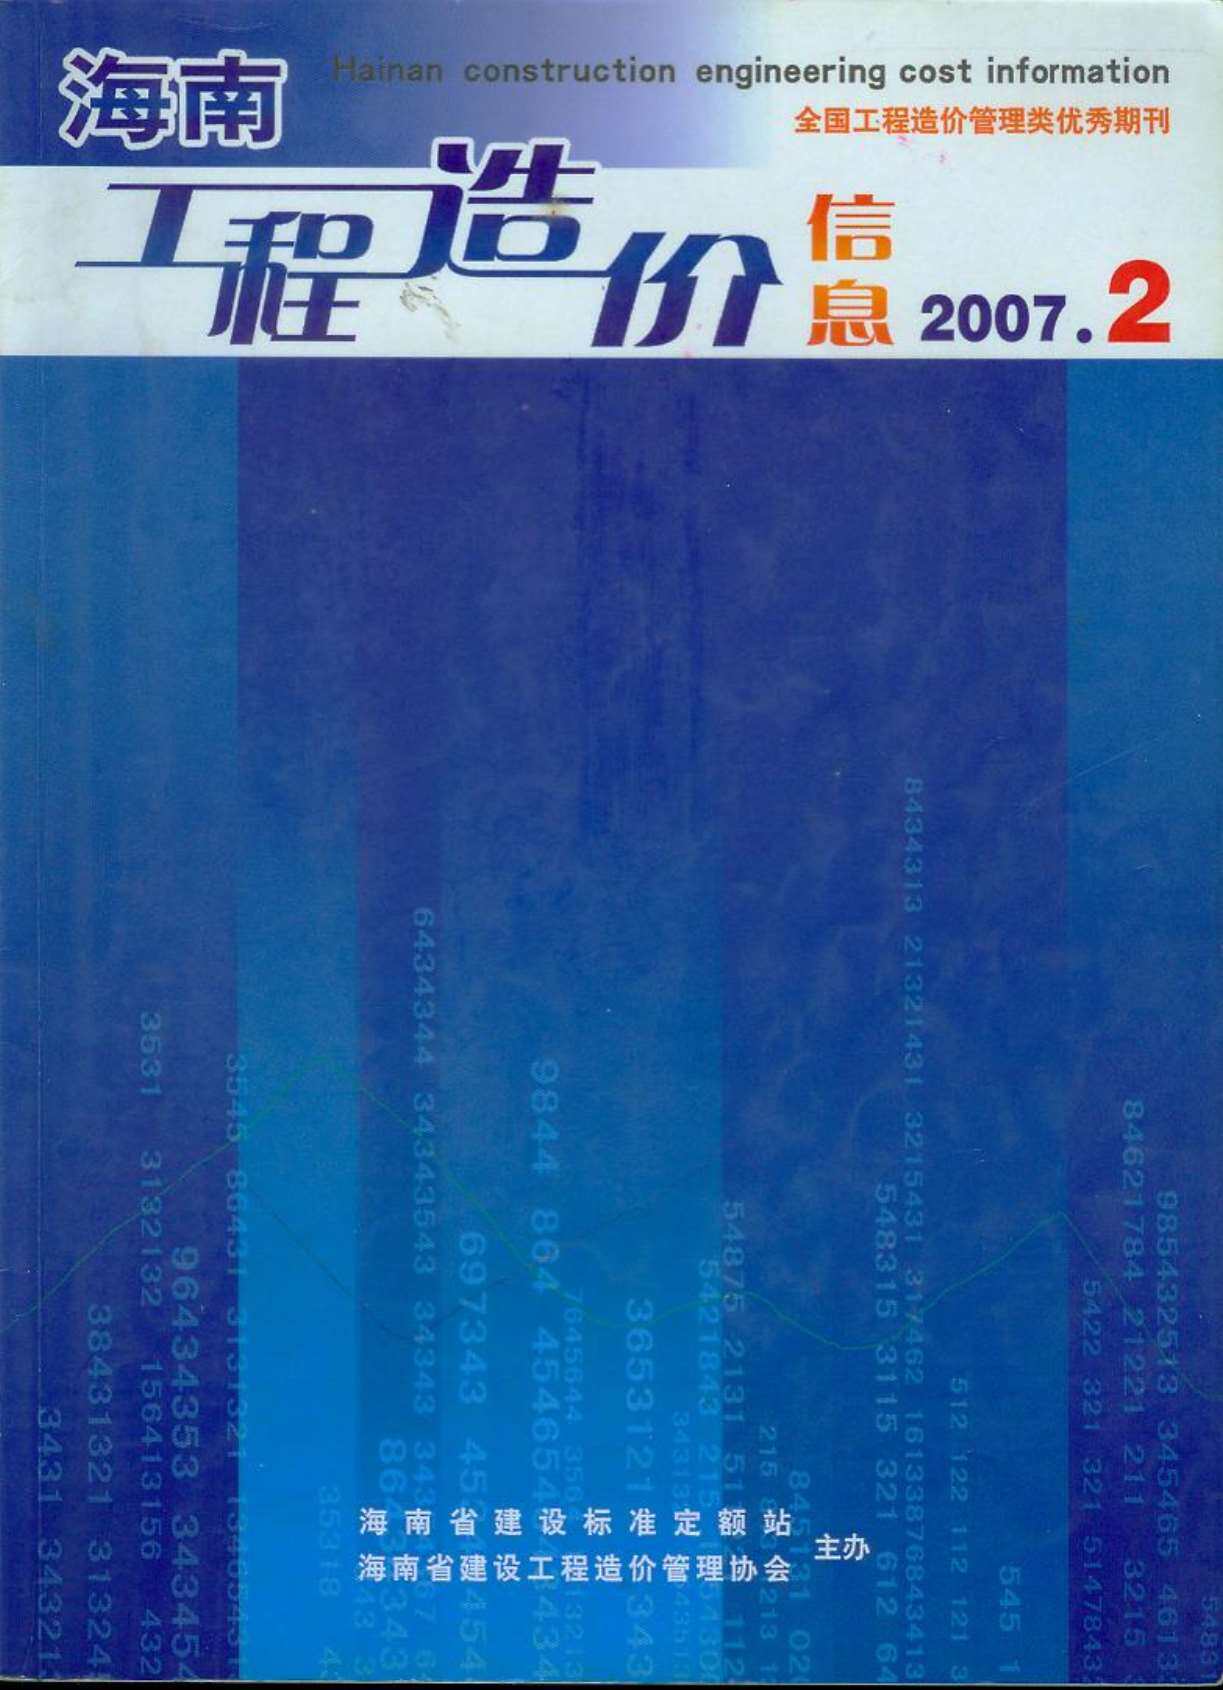 海南省2007年2月工程造价信息期刊